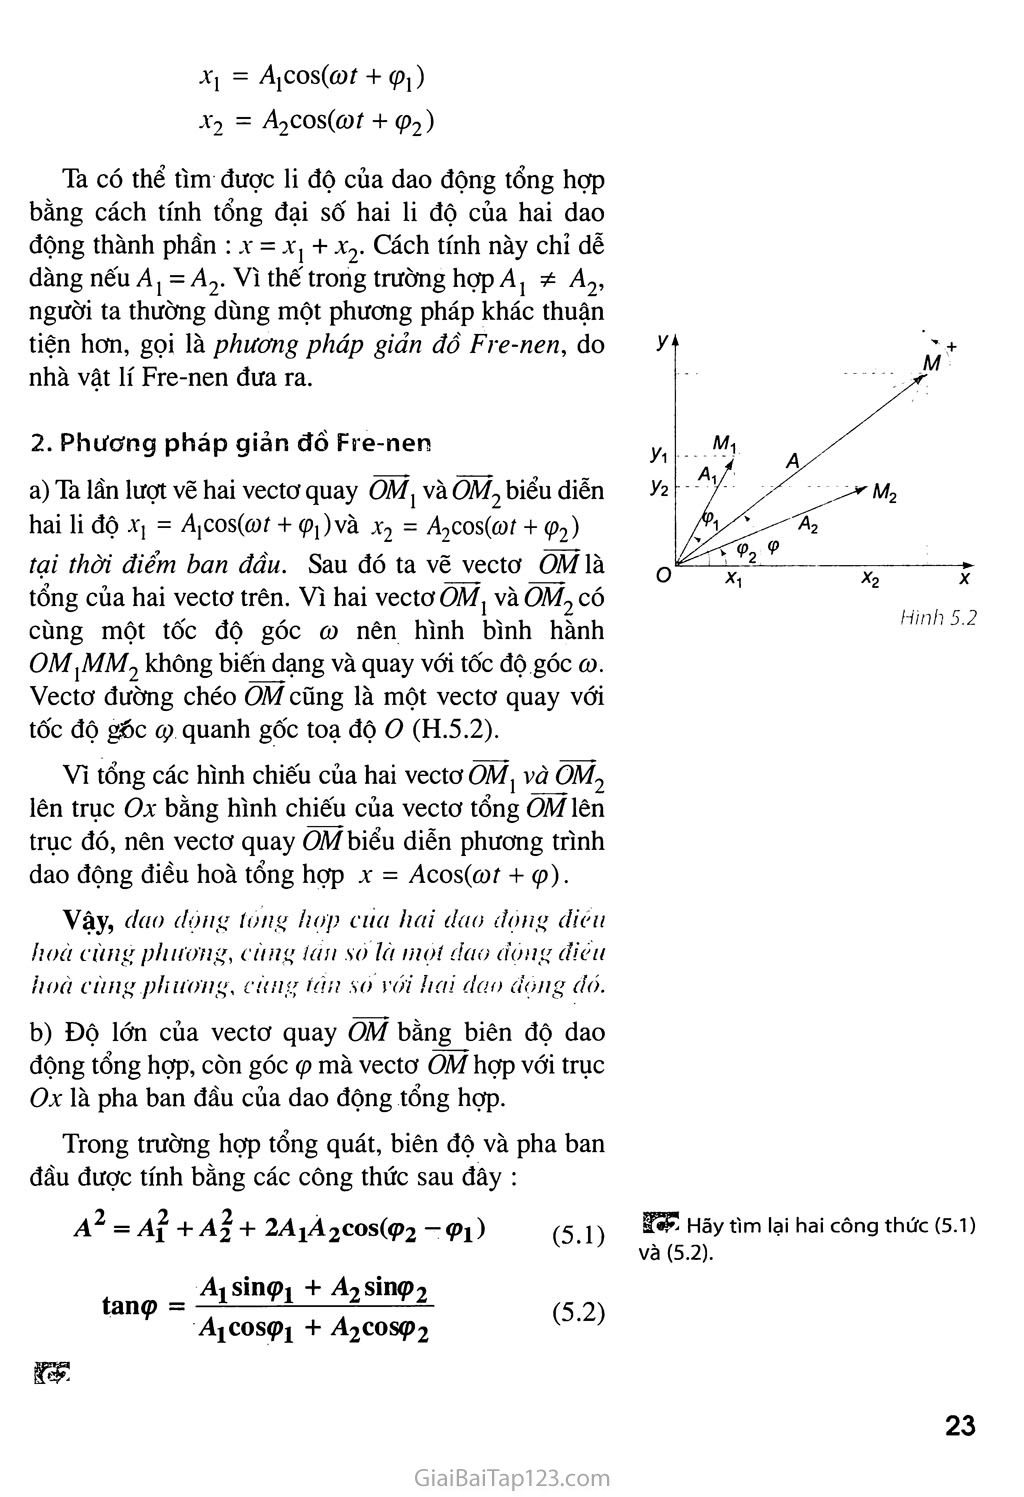 Bài 5. Tổng hợp hai dao động điều hoà cùng phương, cùng tần số. Phương pháp giản đồ Fre-nen trang 2